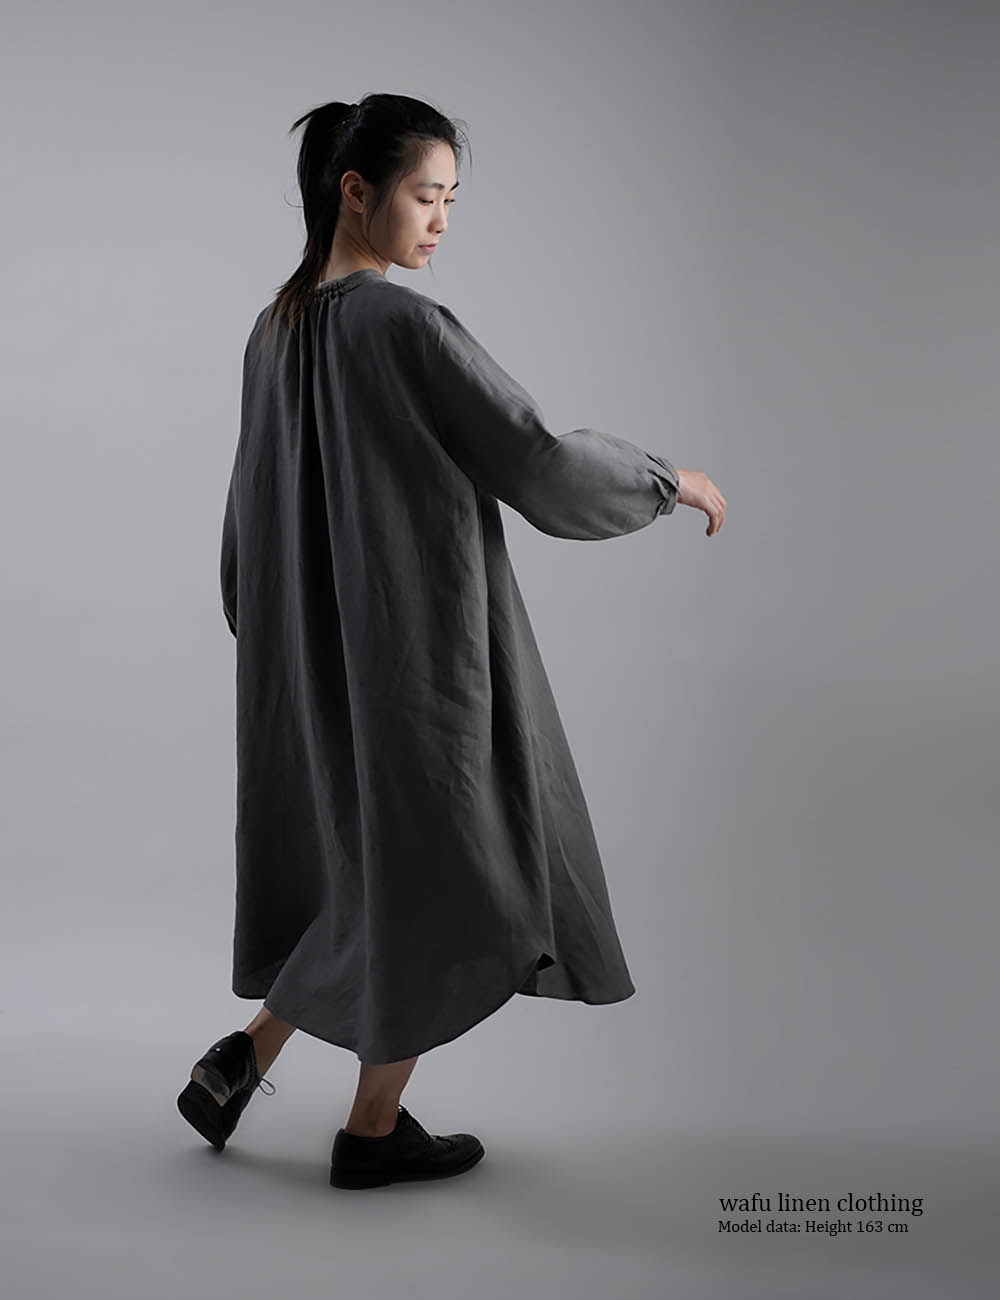 【wafu】Linen Dress  あきすぎないネック のラウンドテールドレス  /鈍色(にびいろ)【free】a034a-nib1